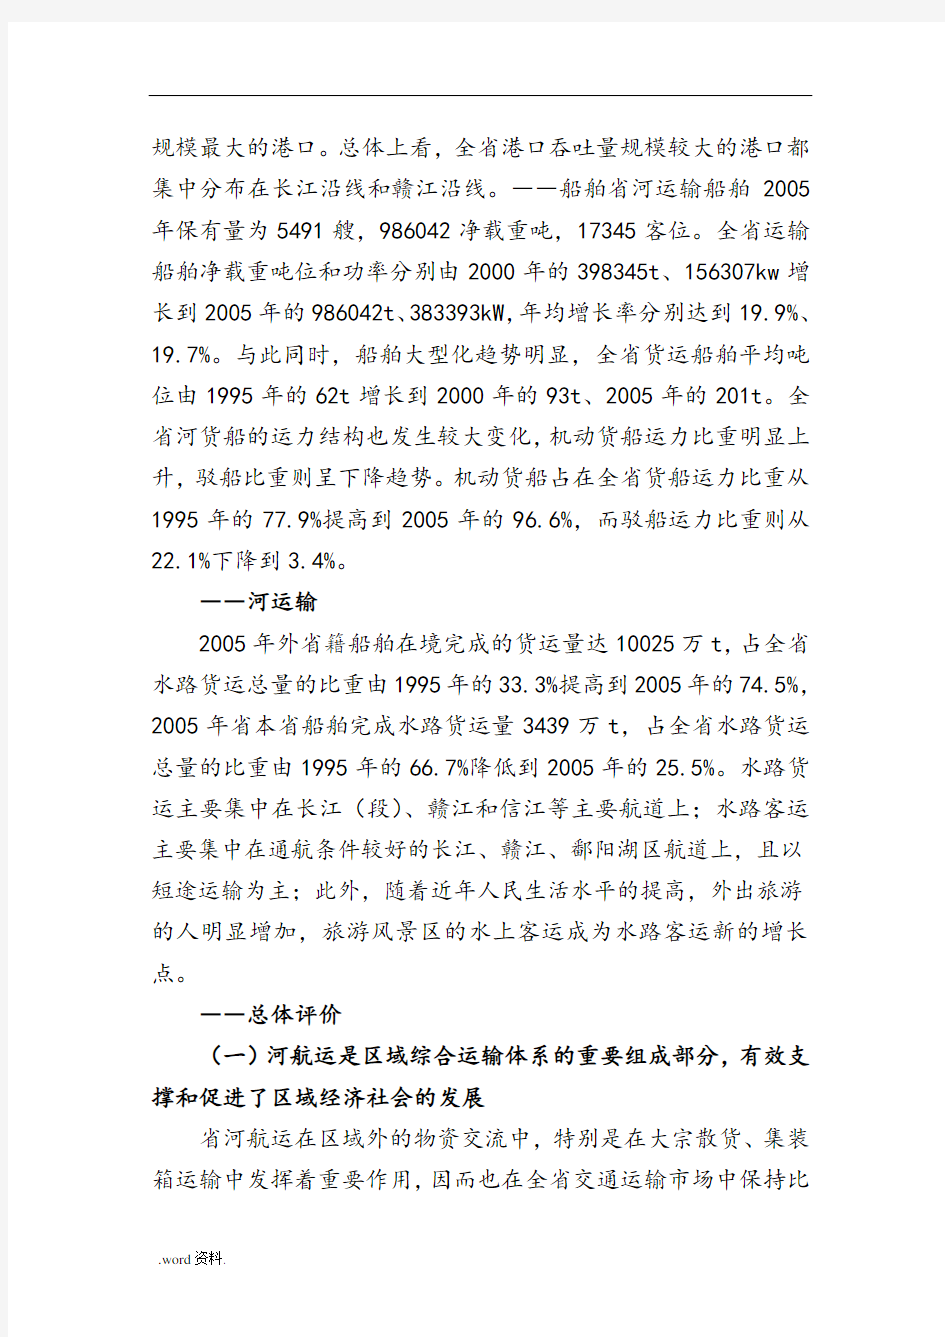 江西省内河航运发展规划(2020年)简介